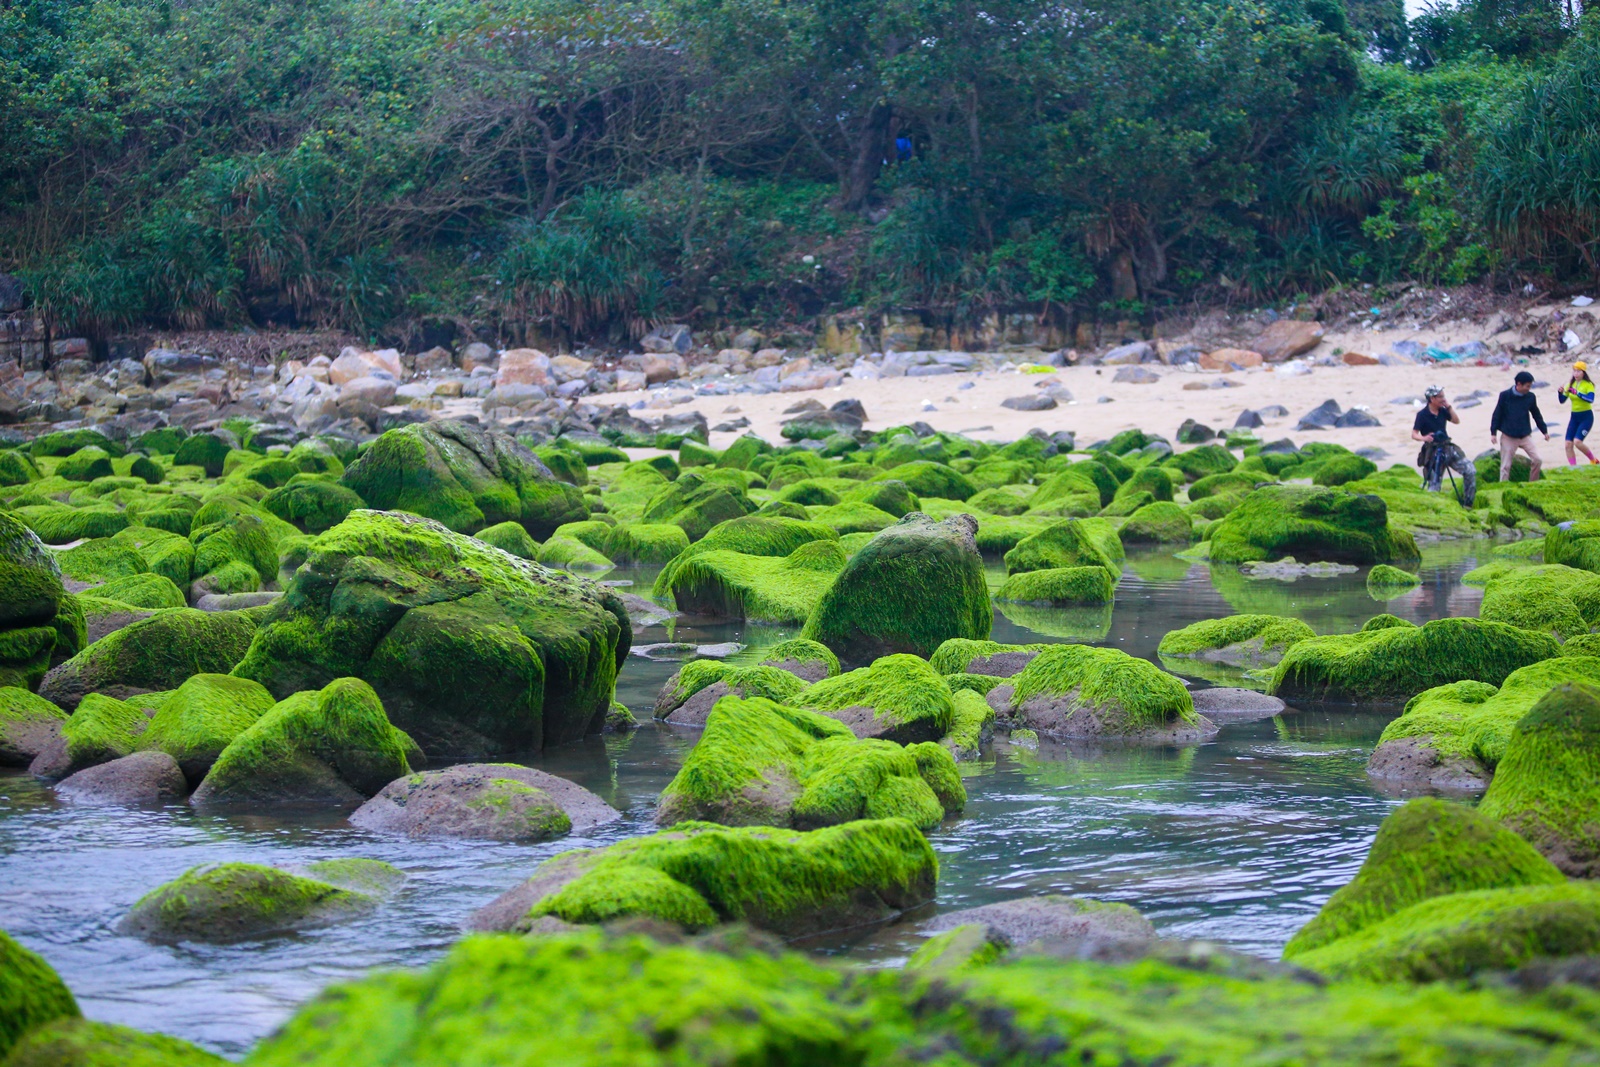 Ảnh: Du khách chen chân chụp ảnh bãi rêu tuyệt đẹp ven biển Đà Nẵng - Ảnh 3.